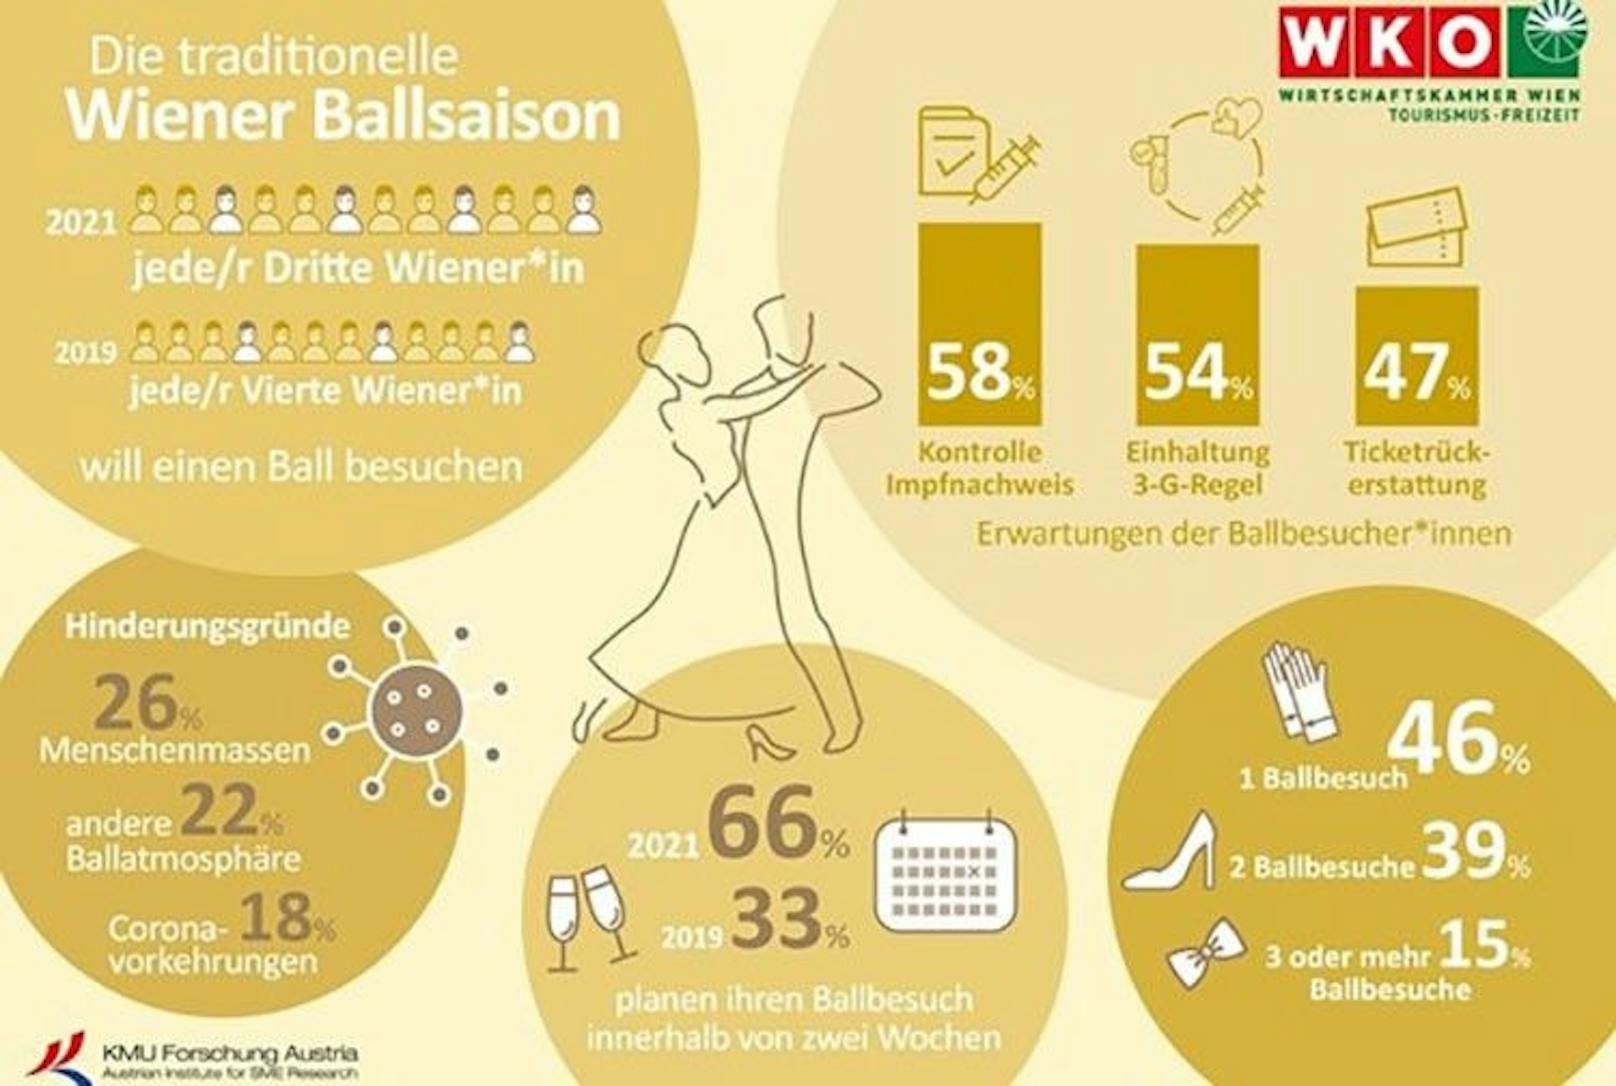 Die Wiener Wirtschaftskammer hat in der Umfrage nach Erwartungen und Hinderungsgründe für den Ballbesuch gefragt.